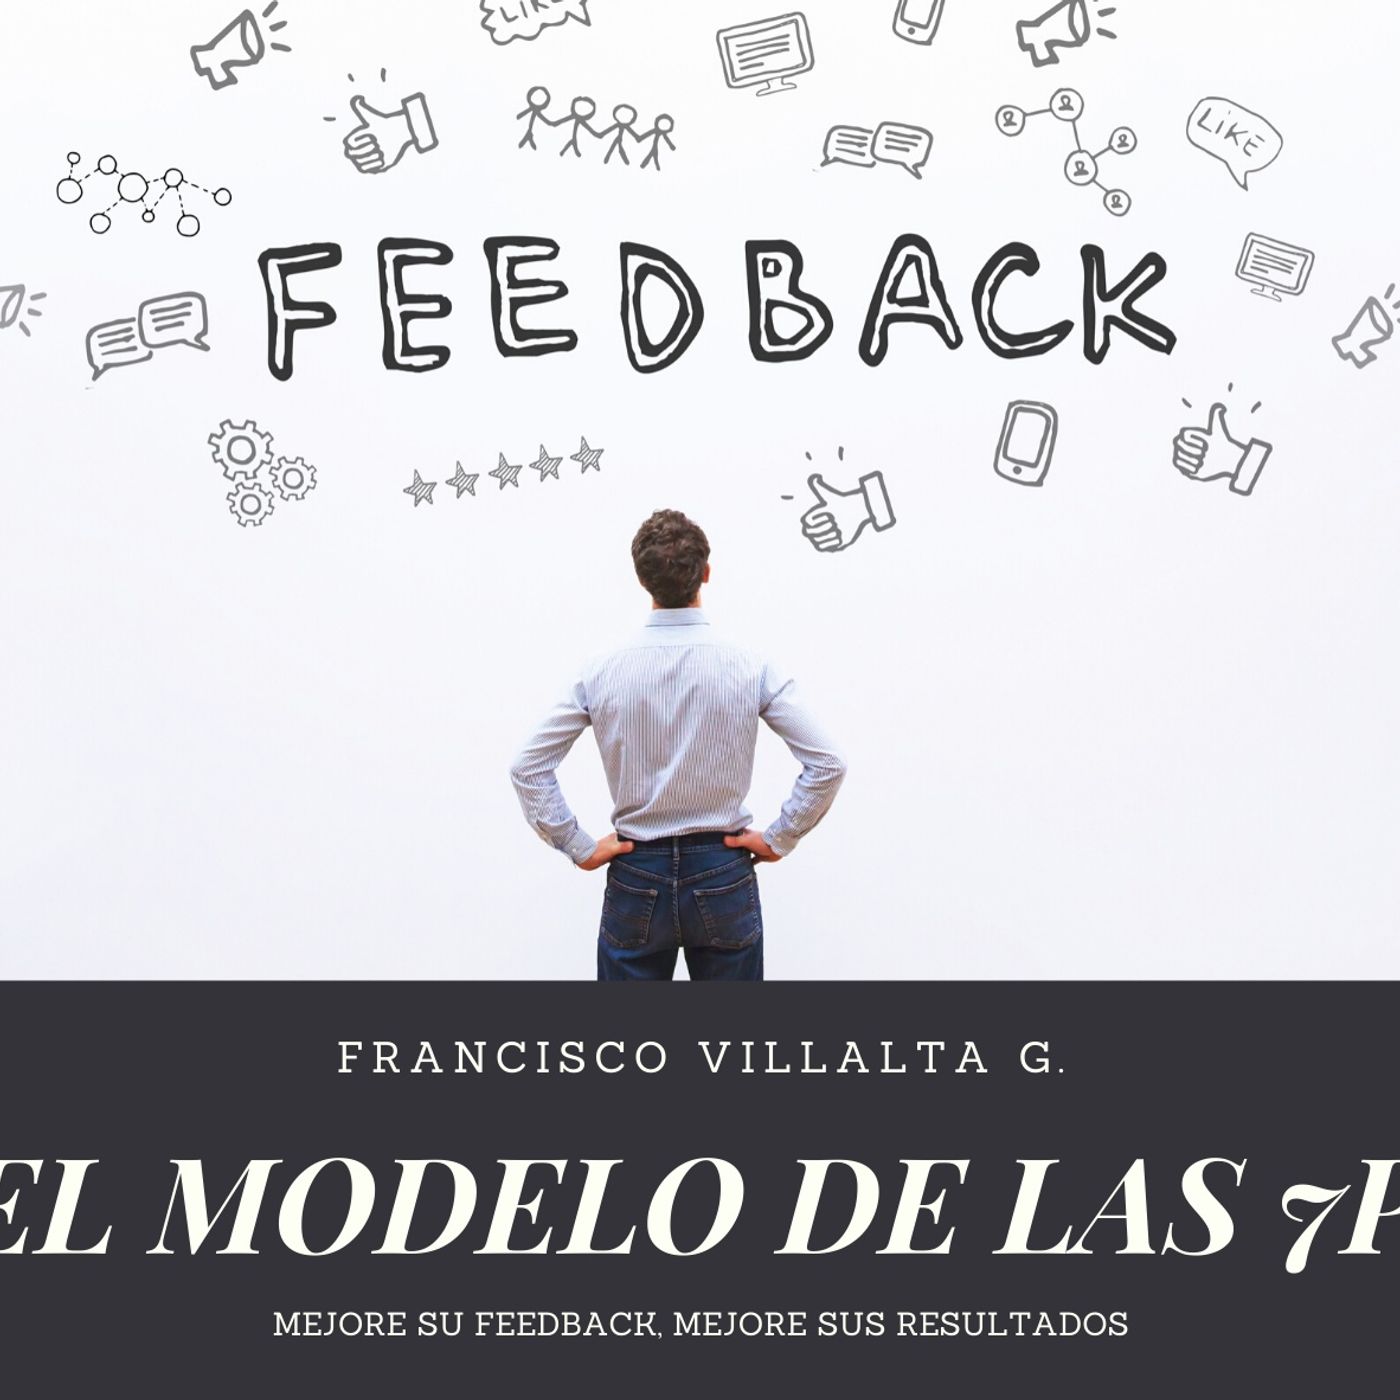 De feedback, efectividad e intención - parte 2